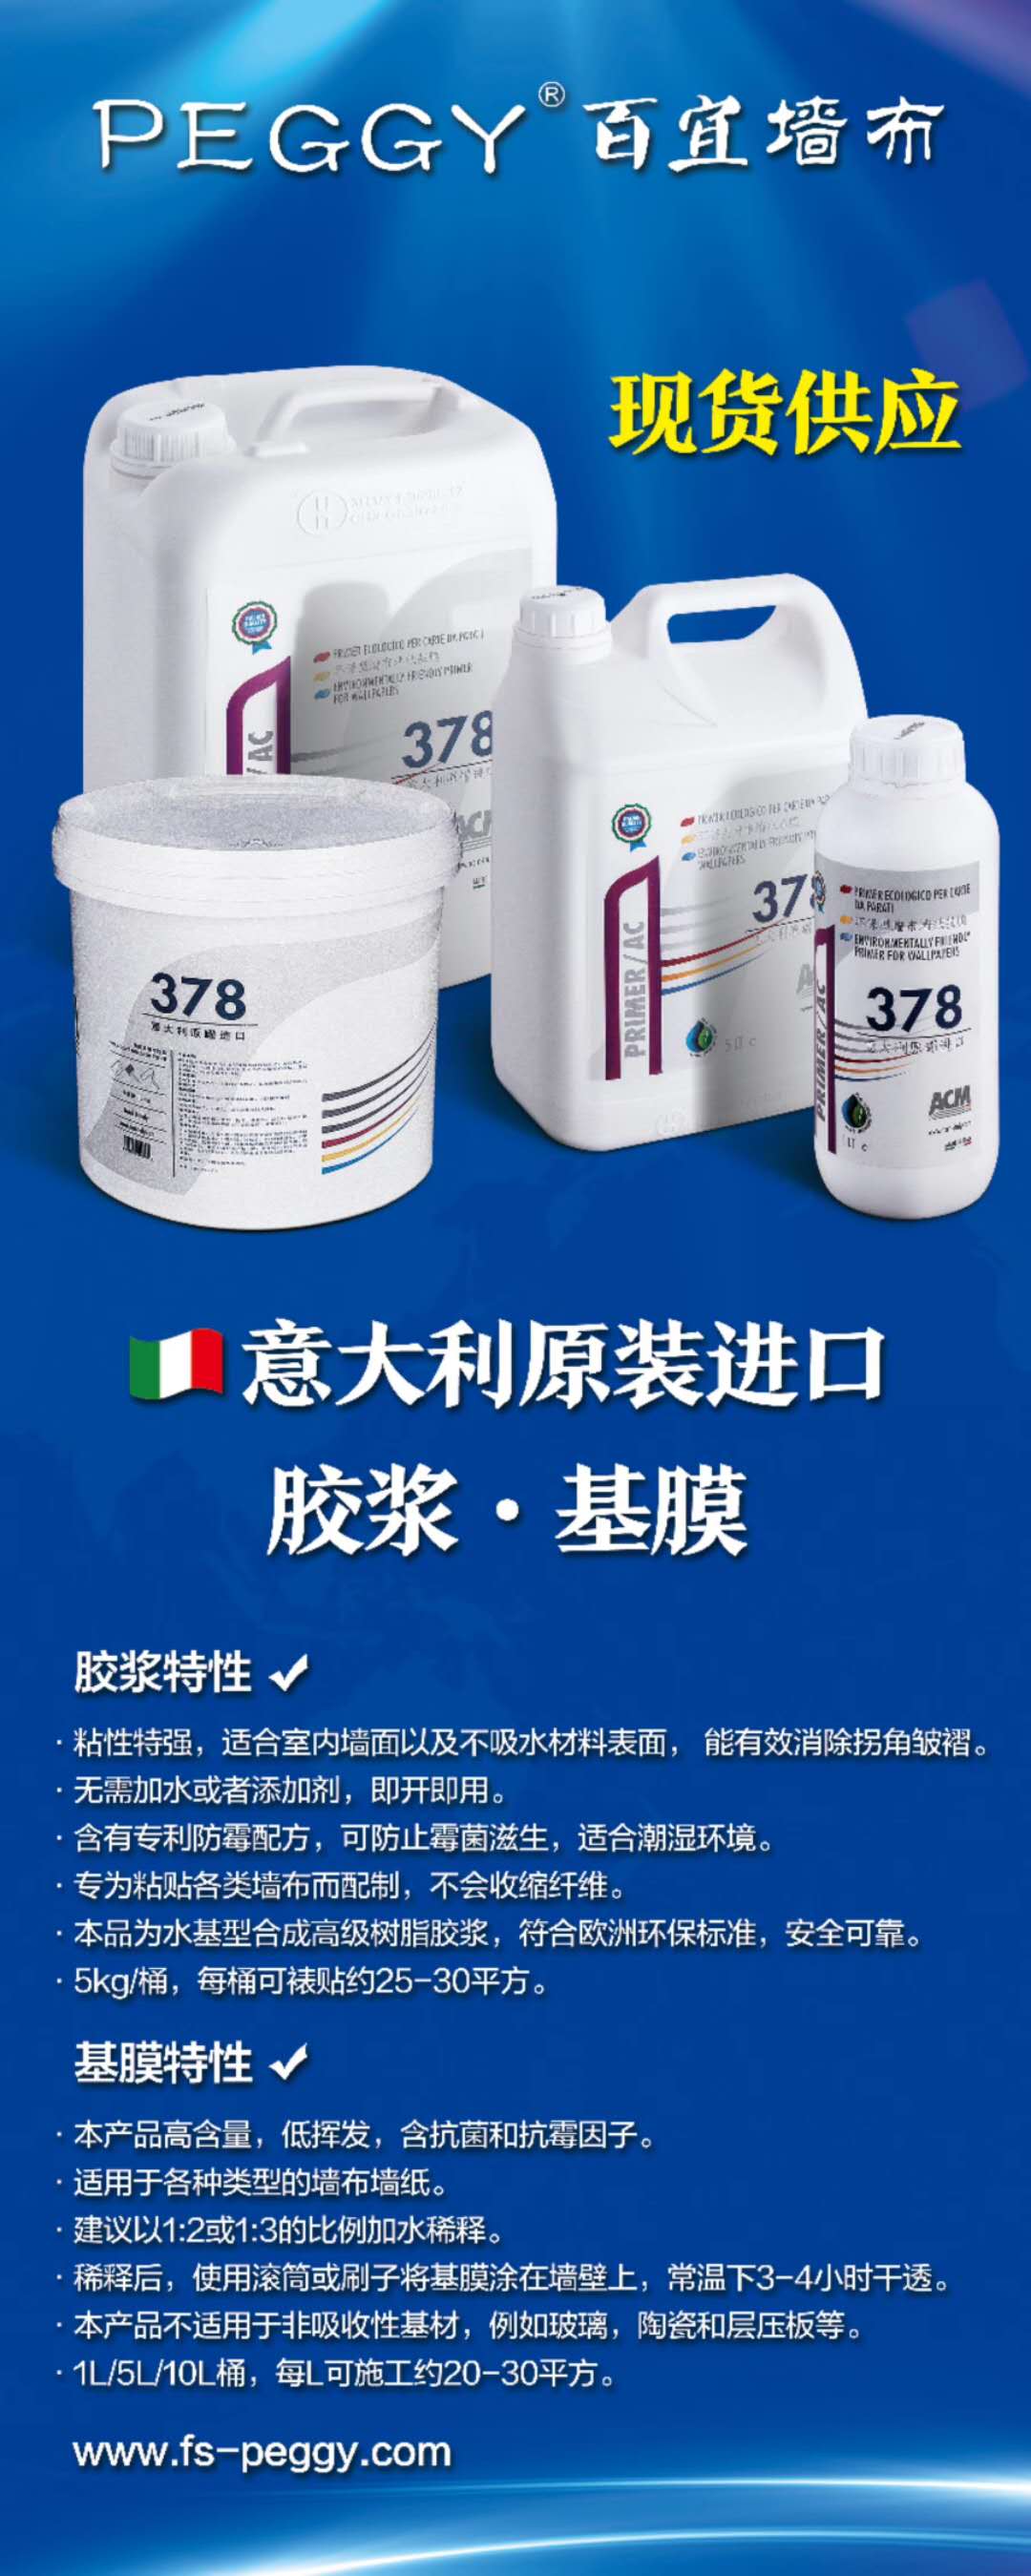 378固化剂 进口固化剂  防水固化剂 墙布基膜 墙面固化剂